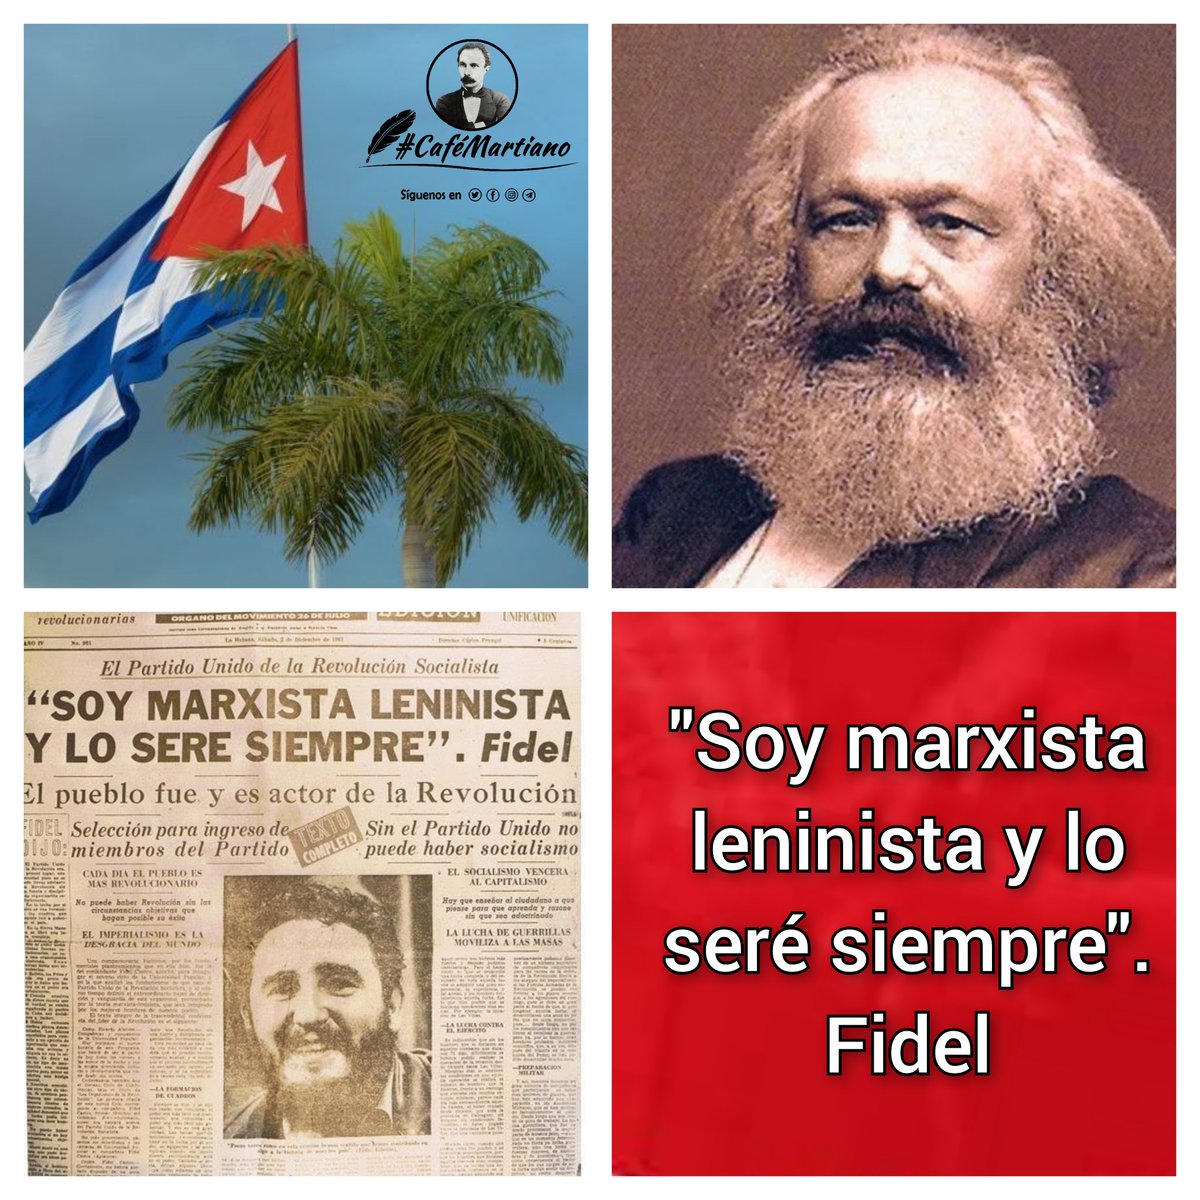 Buenos días 🇨🇺 #CaféMartiano Del fundador del comunismo científico, recoge la historia un 29 de marzo de 1883 escribe Martí: ✍️'Ved esta gran sala. Karl Marx ha muerto. Como se puso del lado de los débiles, merece honor'. ✍️'Honrar, honra'. #CubaViveEnSuHistoria